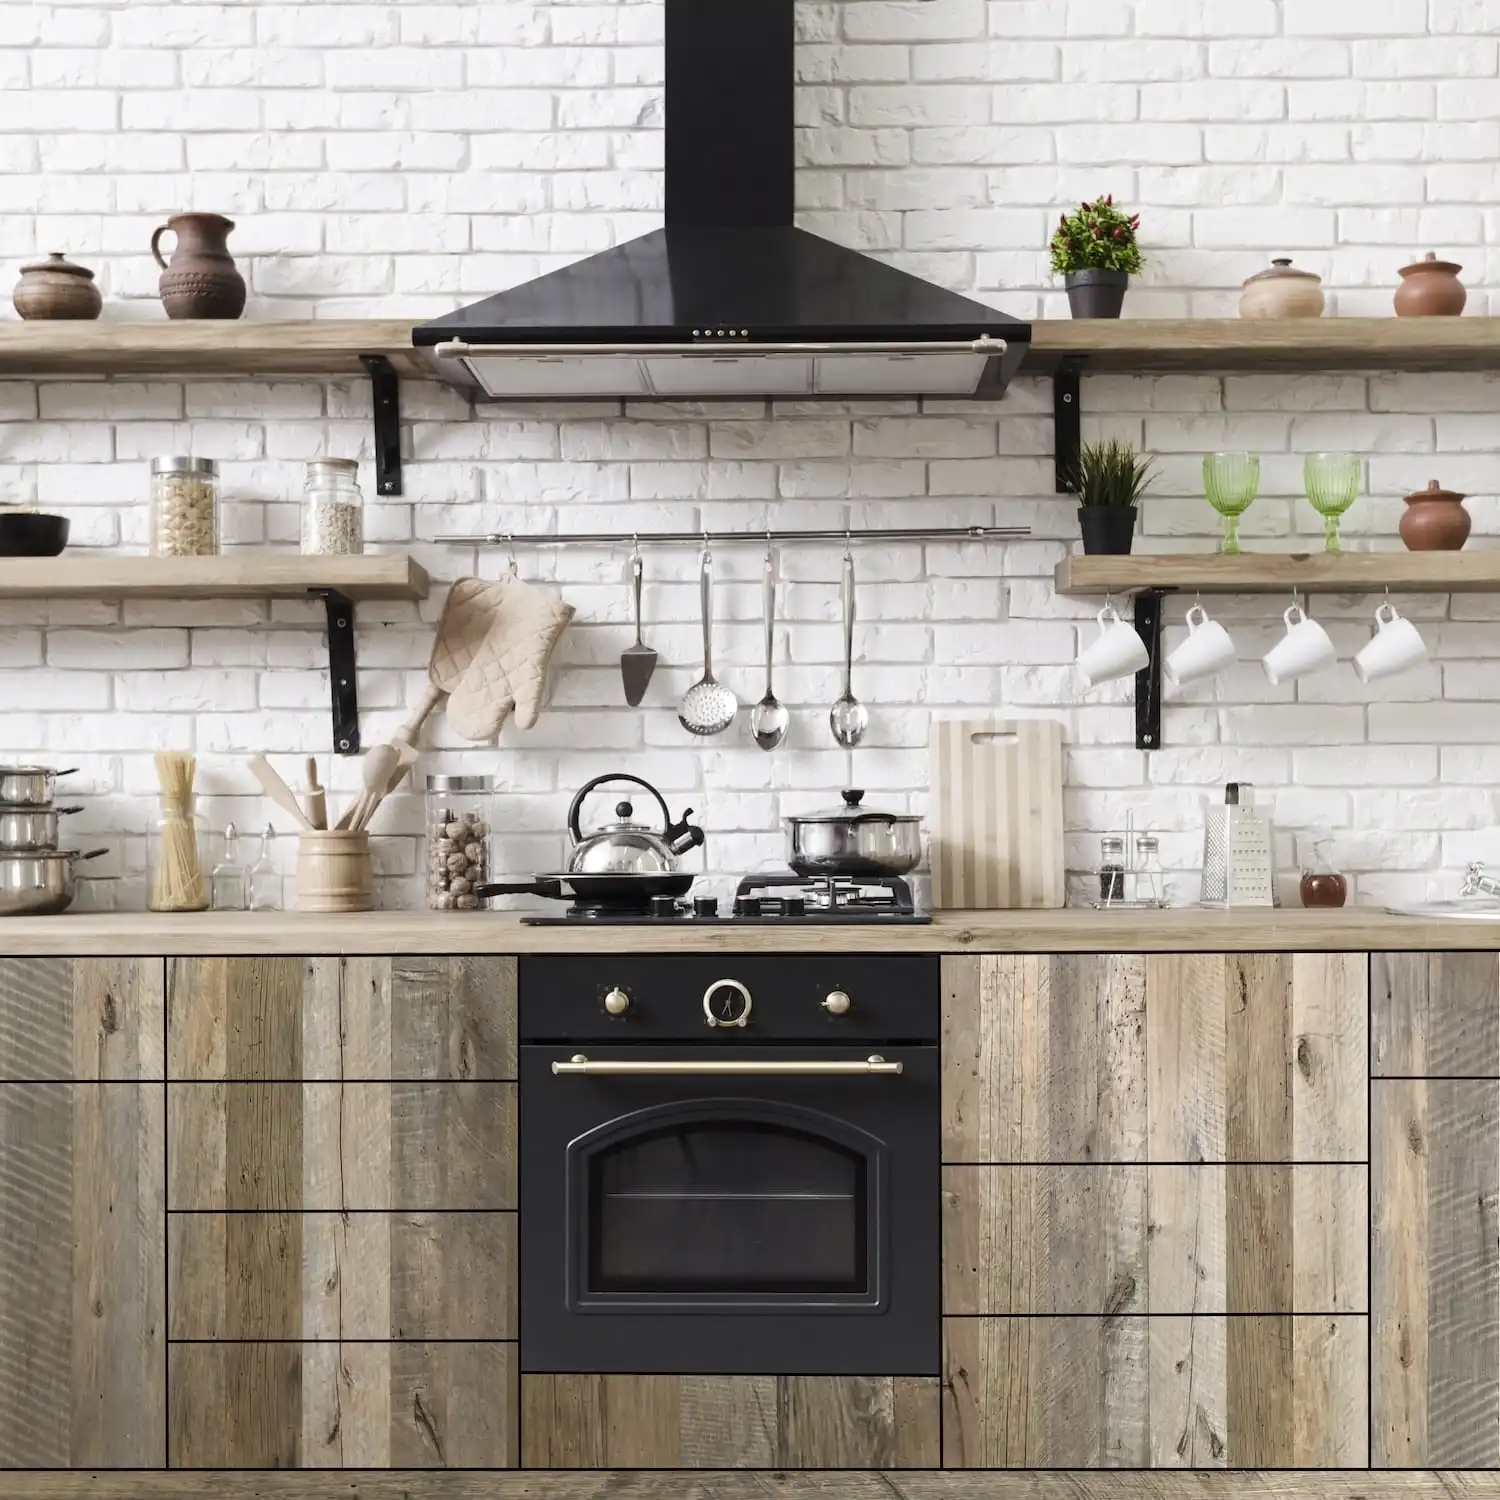  Intérieur de cuisine moderne avec poêle noir, armoires en bois et dosseret carrelé blanc, avec ustensiles suspendus et étagères avec pots et verdure sur panneaux vieux bois. 